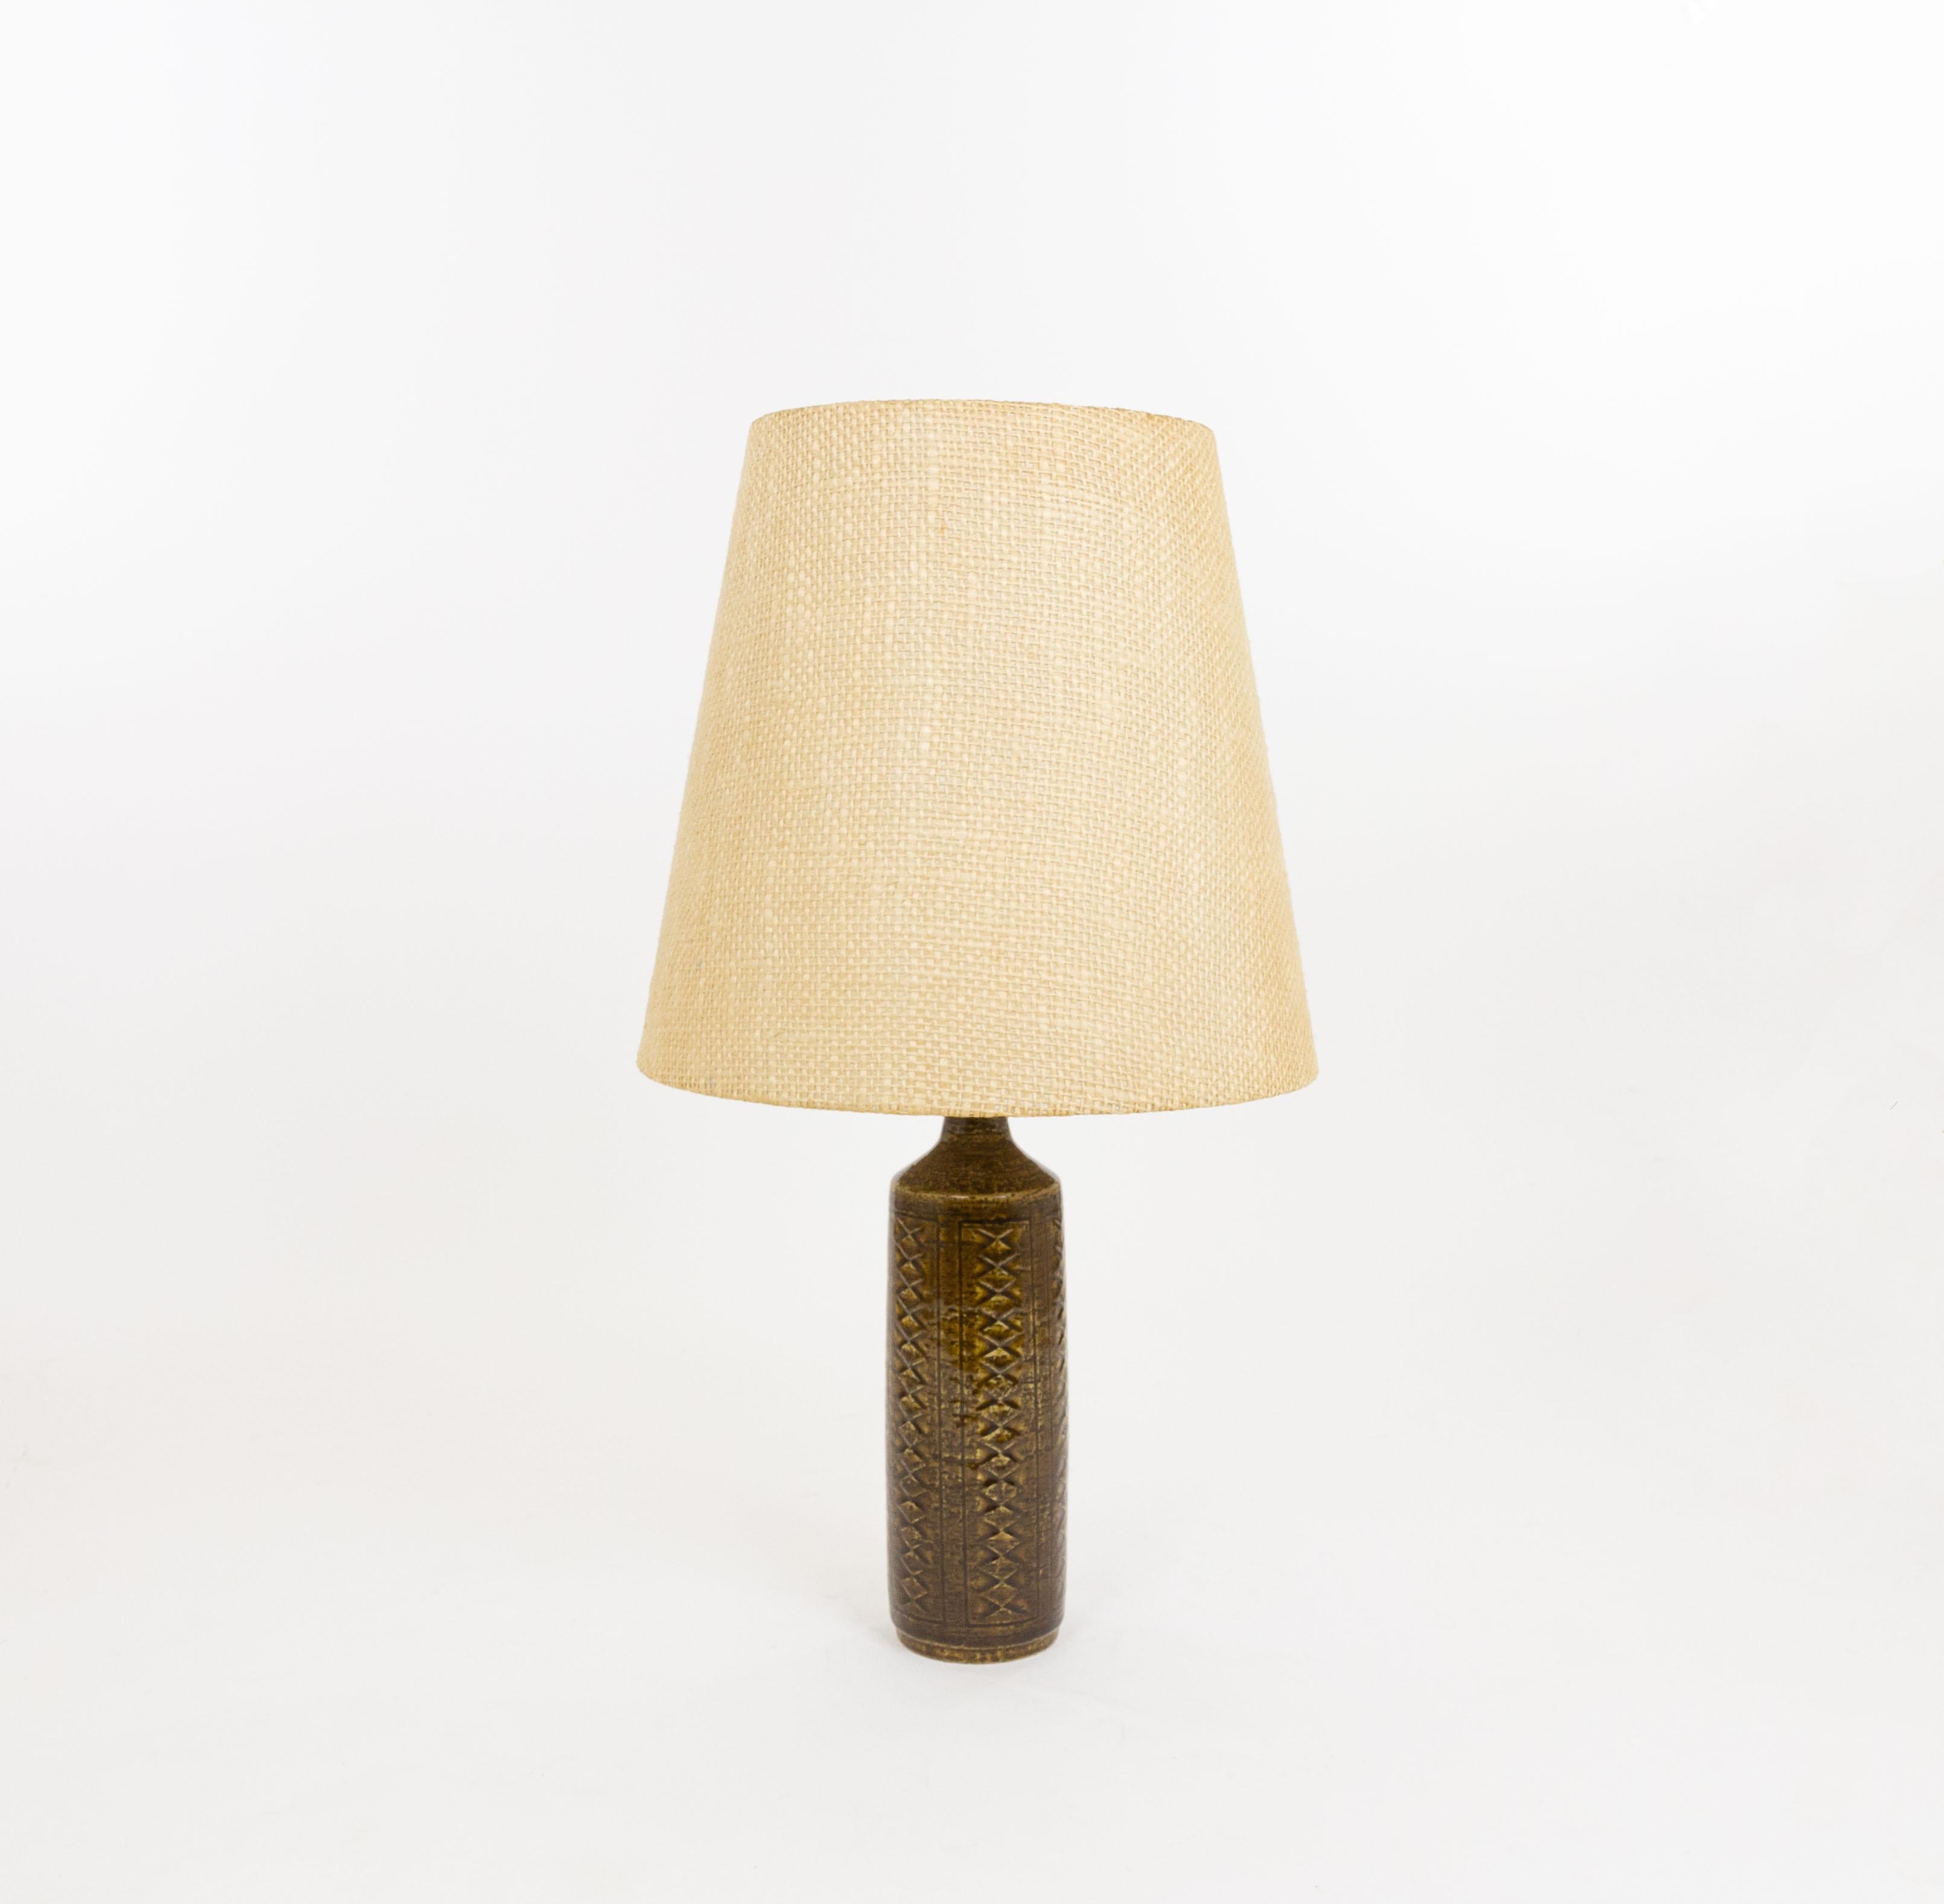 Tischleuchte Modell DL/27, hergestellt von Annelise und Per Linnemann-Schmidt für Palshus in den 1960er Jahren. Die Farbe des handgefertigten, dekorierten Sockels ist kastanienbraun. Es hat beeindruckende Muster.

Die Lampe wird mit der originalen